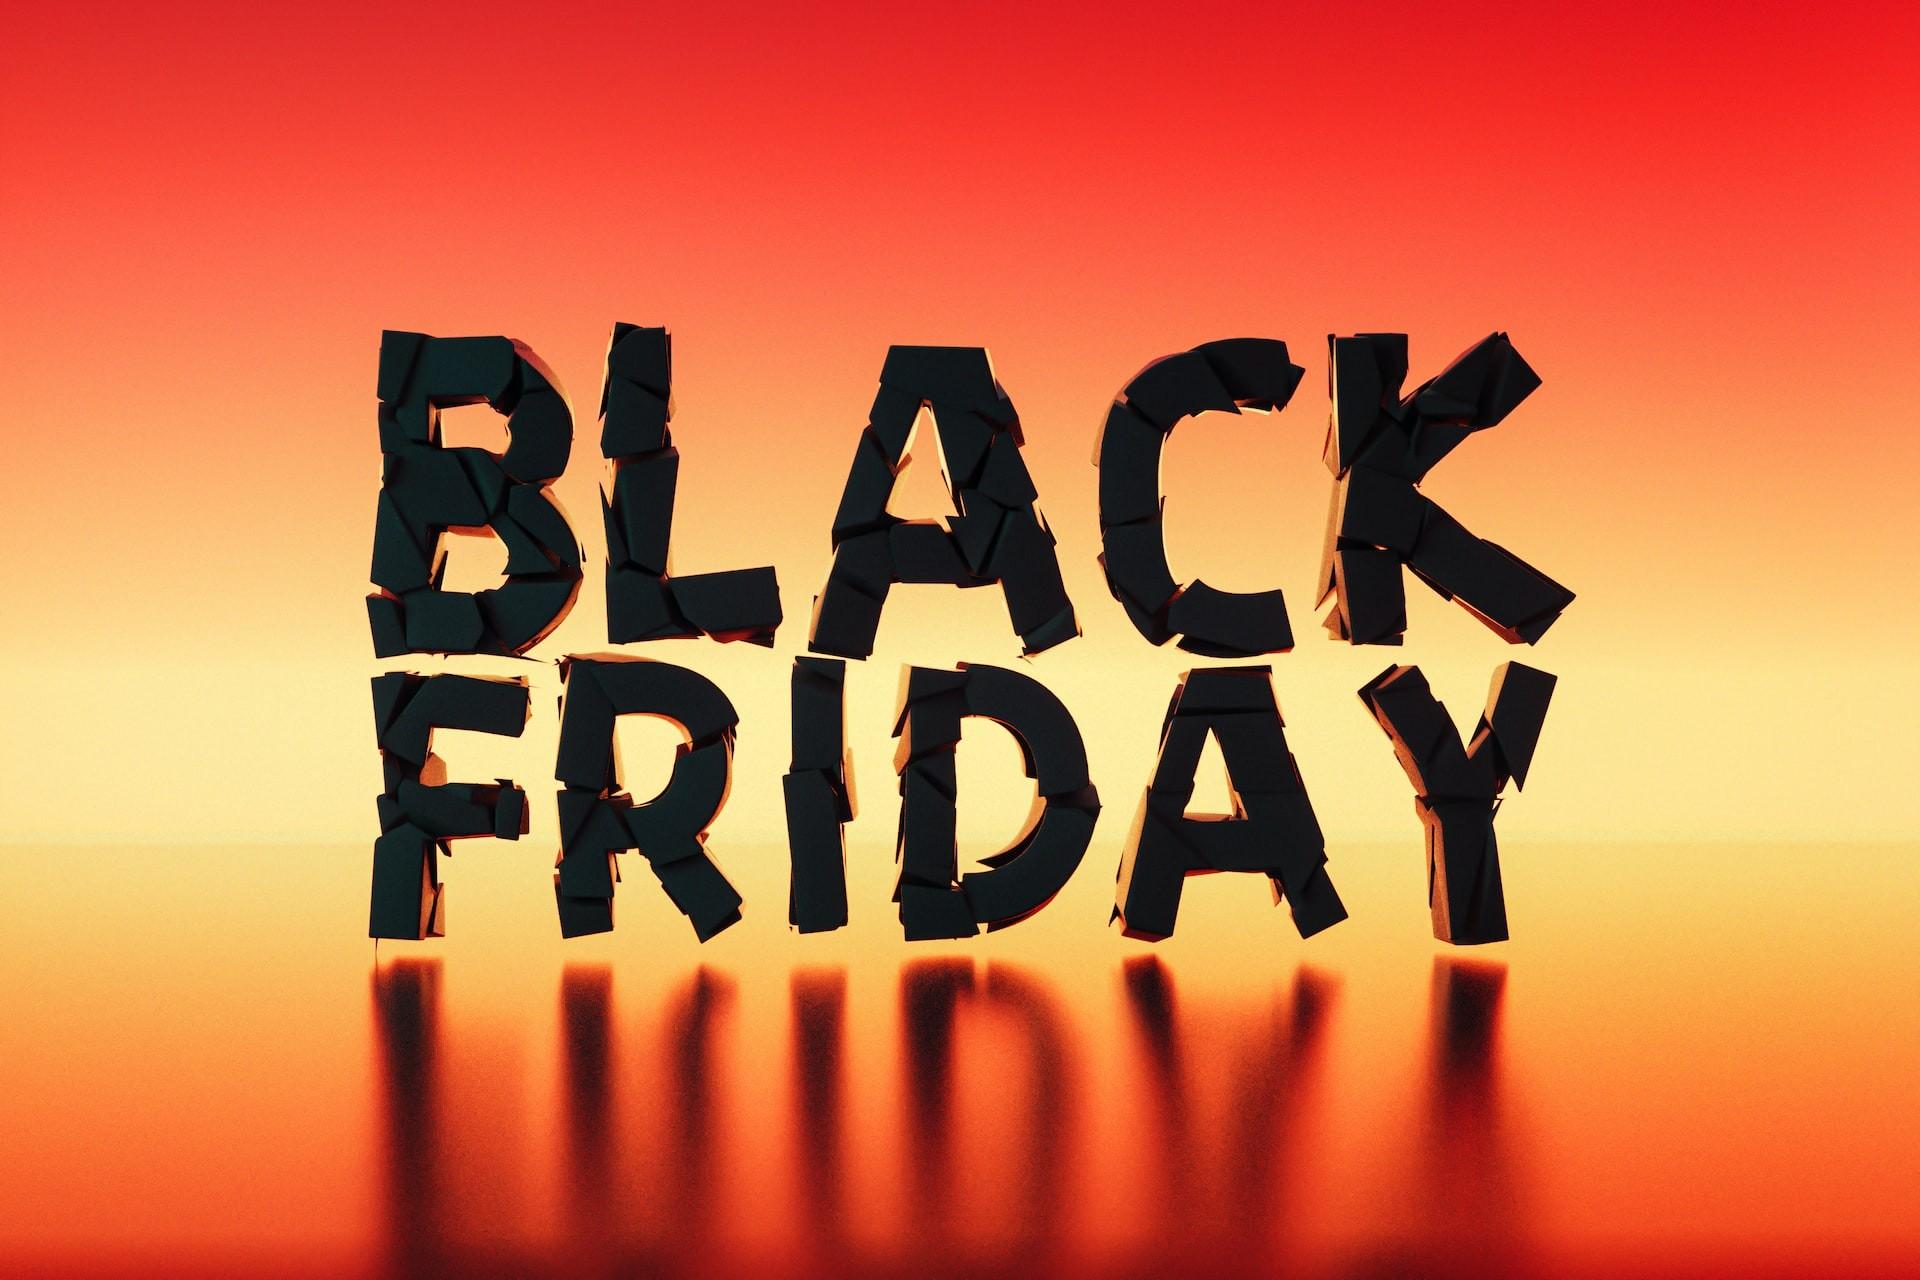 Imagem mostra o termo "Black Friday" em um fundo laranja